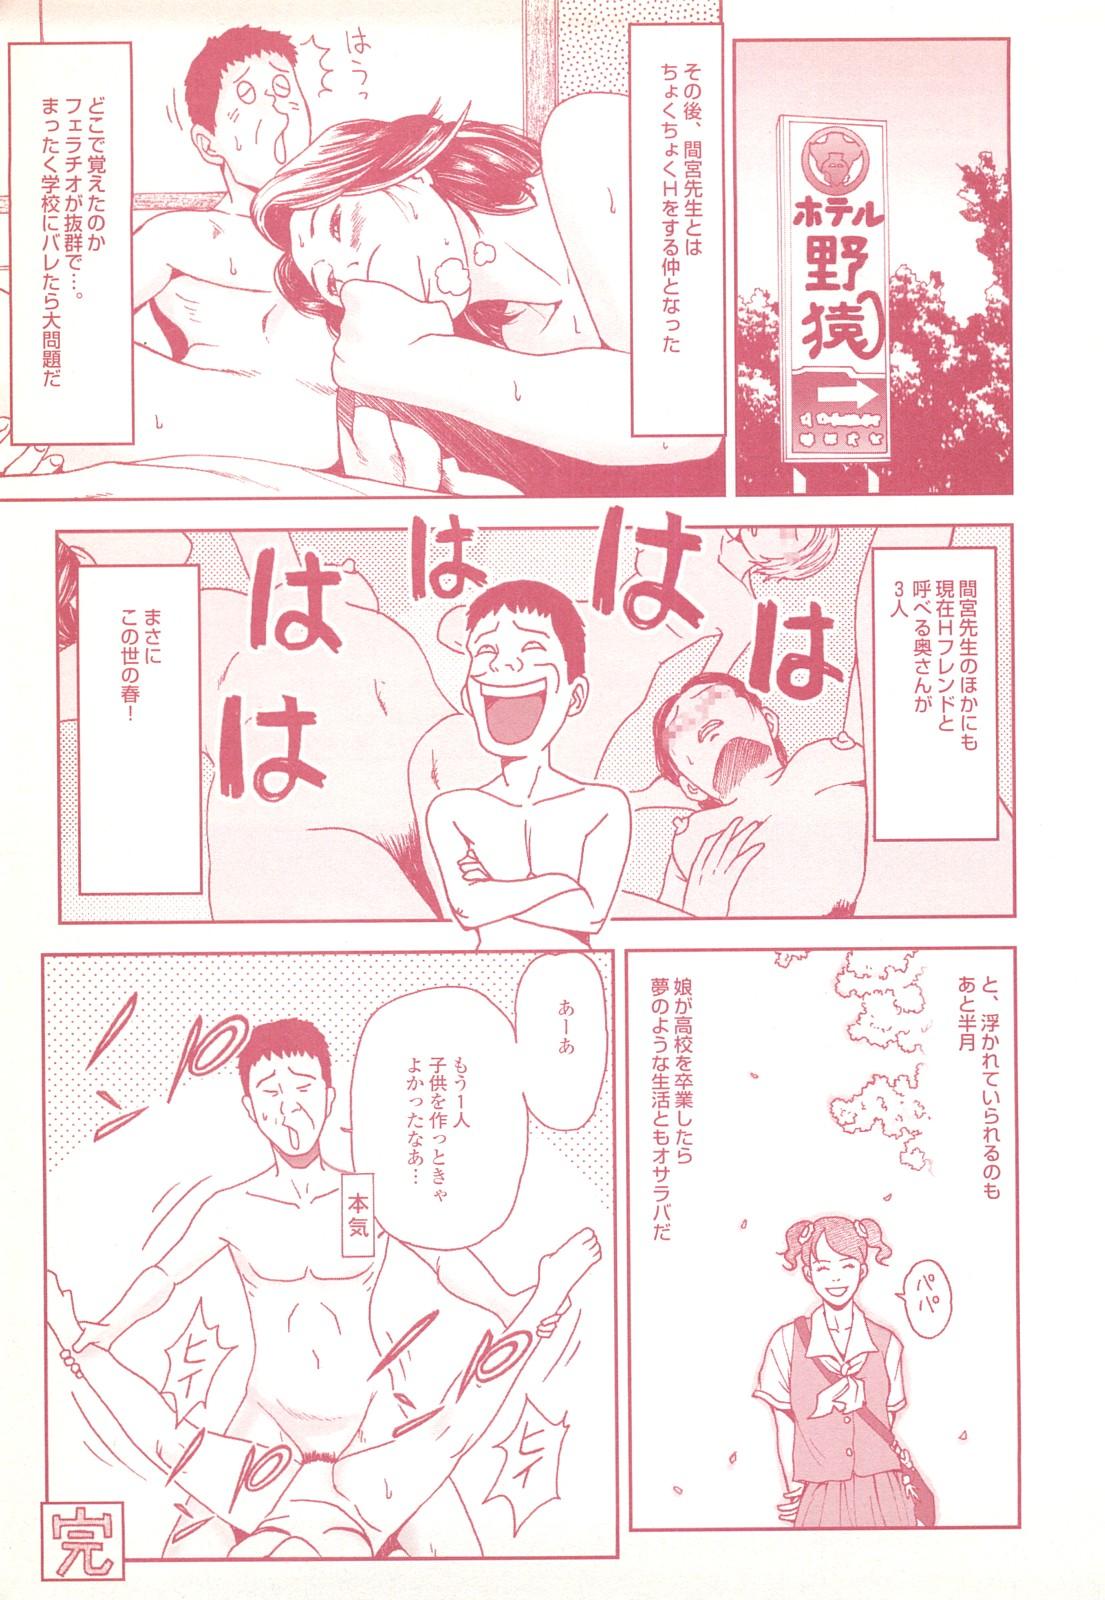 コミック裏モノJAPAN Vol.18 今井のりたつスペシャル号 122